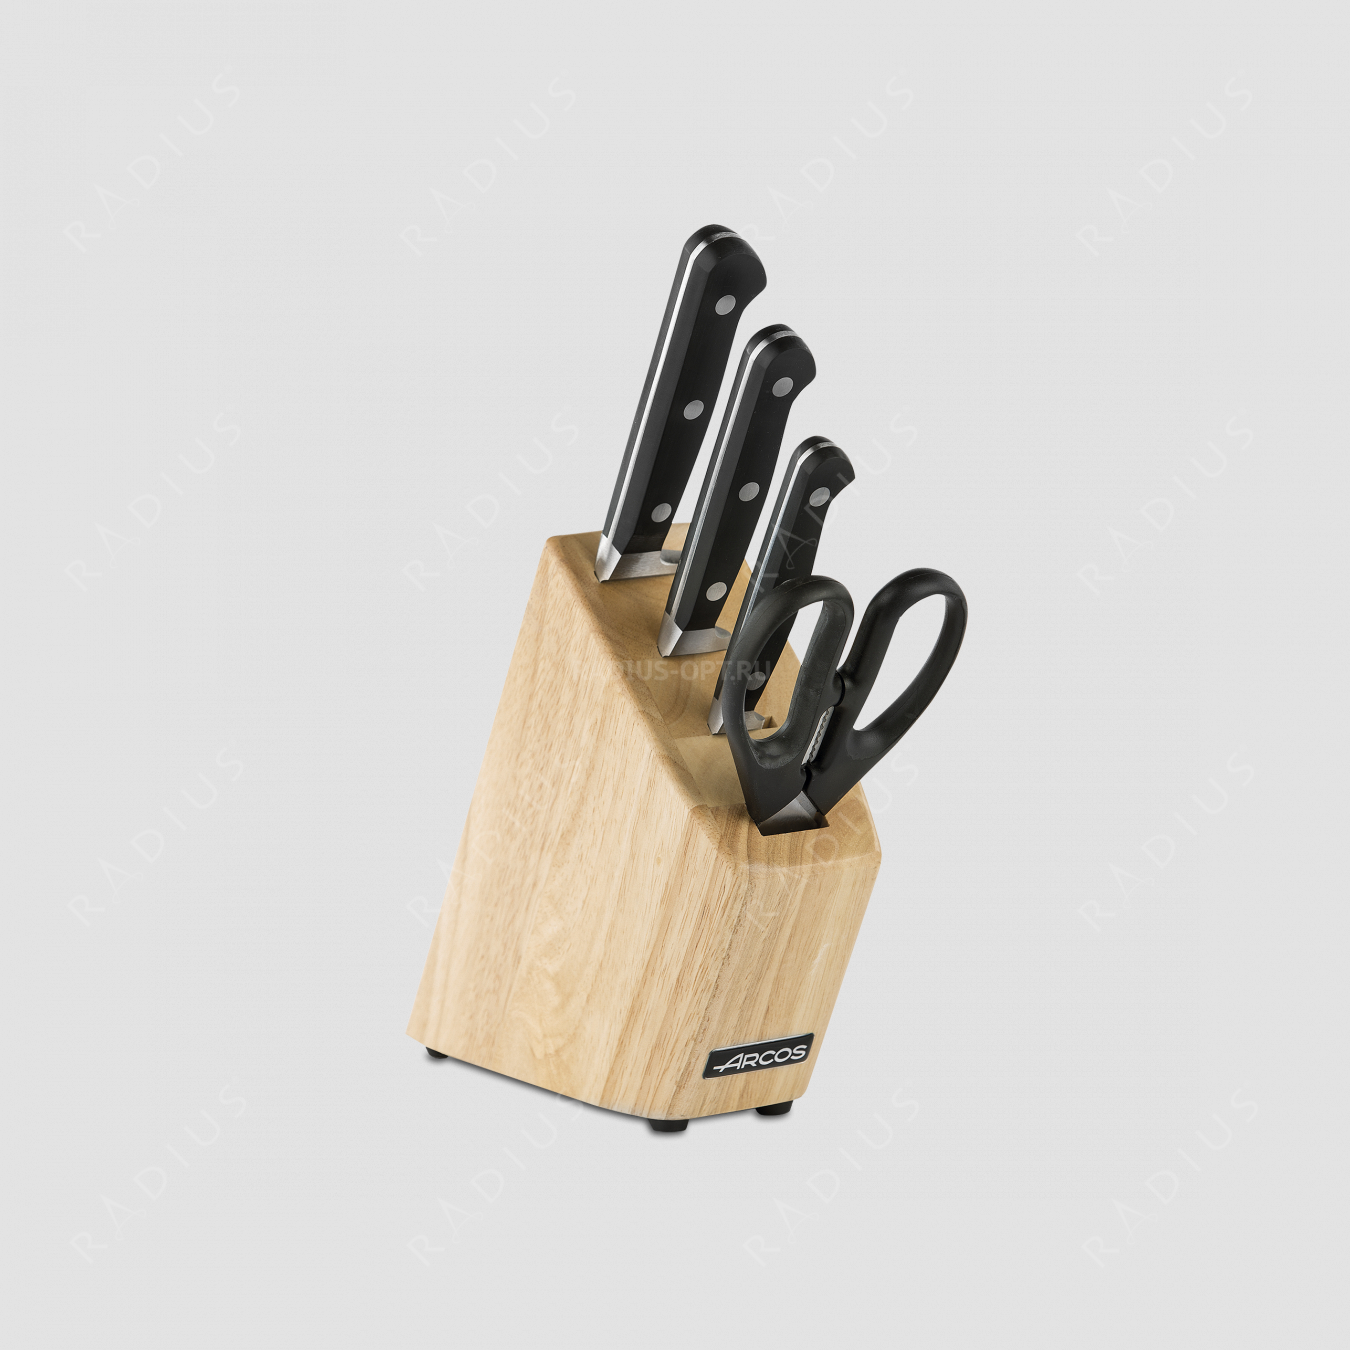 Набор из 3-х кухонных ножей с ножницами на деревянной подставке, серия Clasica, ARCOS, Испания